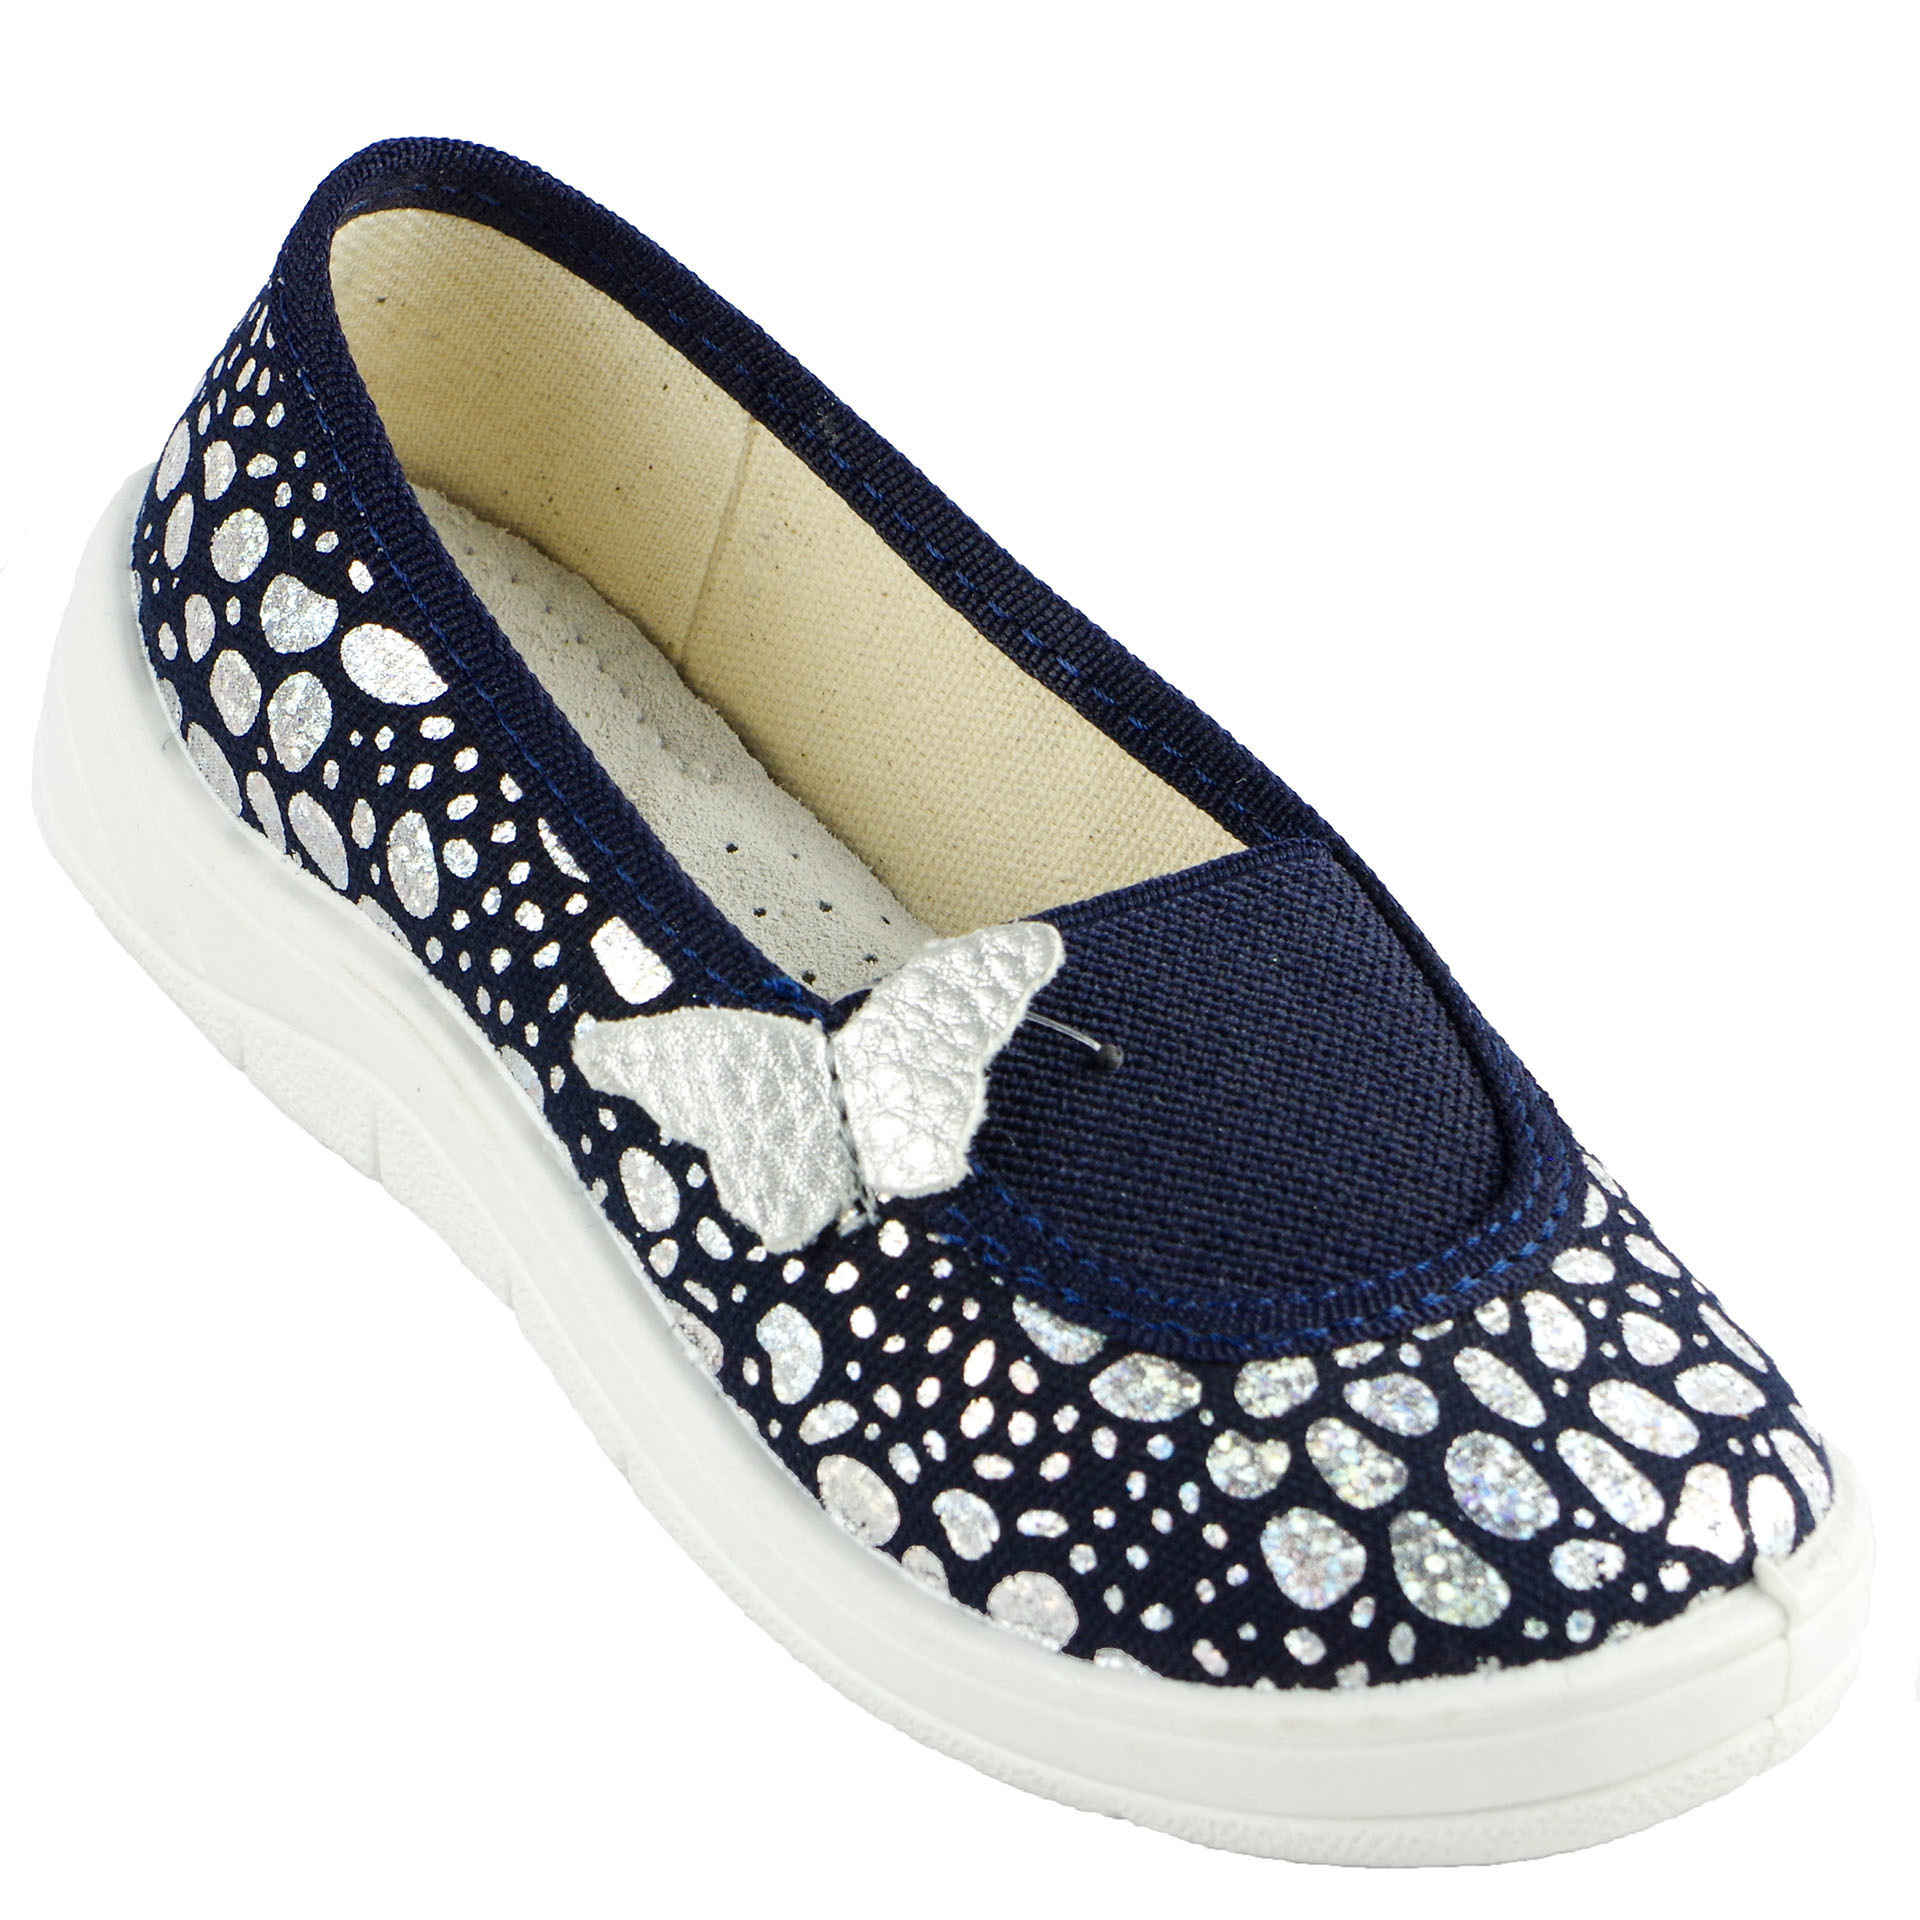 Текстильная обувь для девочек Тапочки Алиса Waldi (1405) цвет Синий 24-30 размеры – Sole Kids